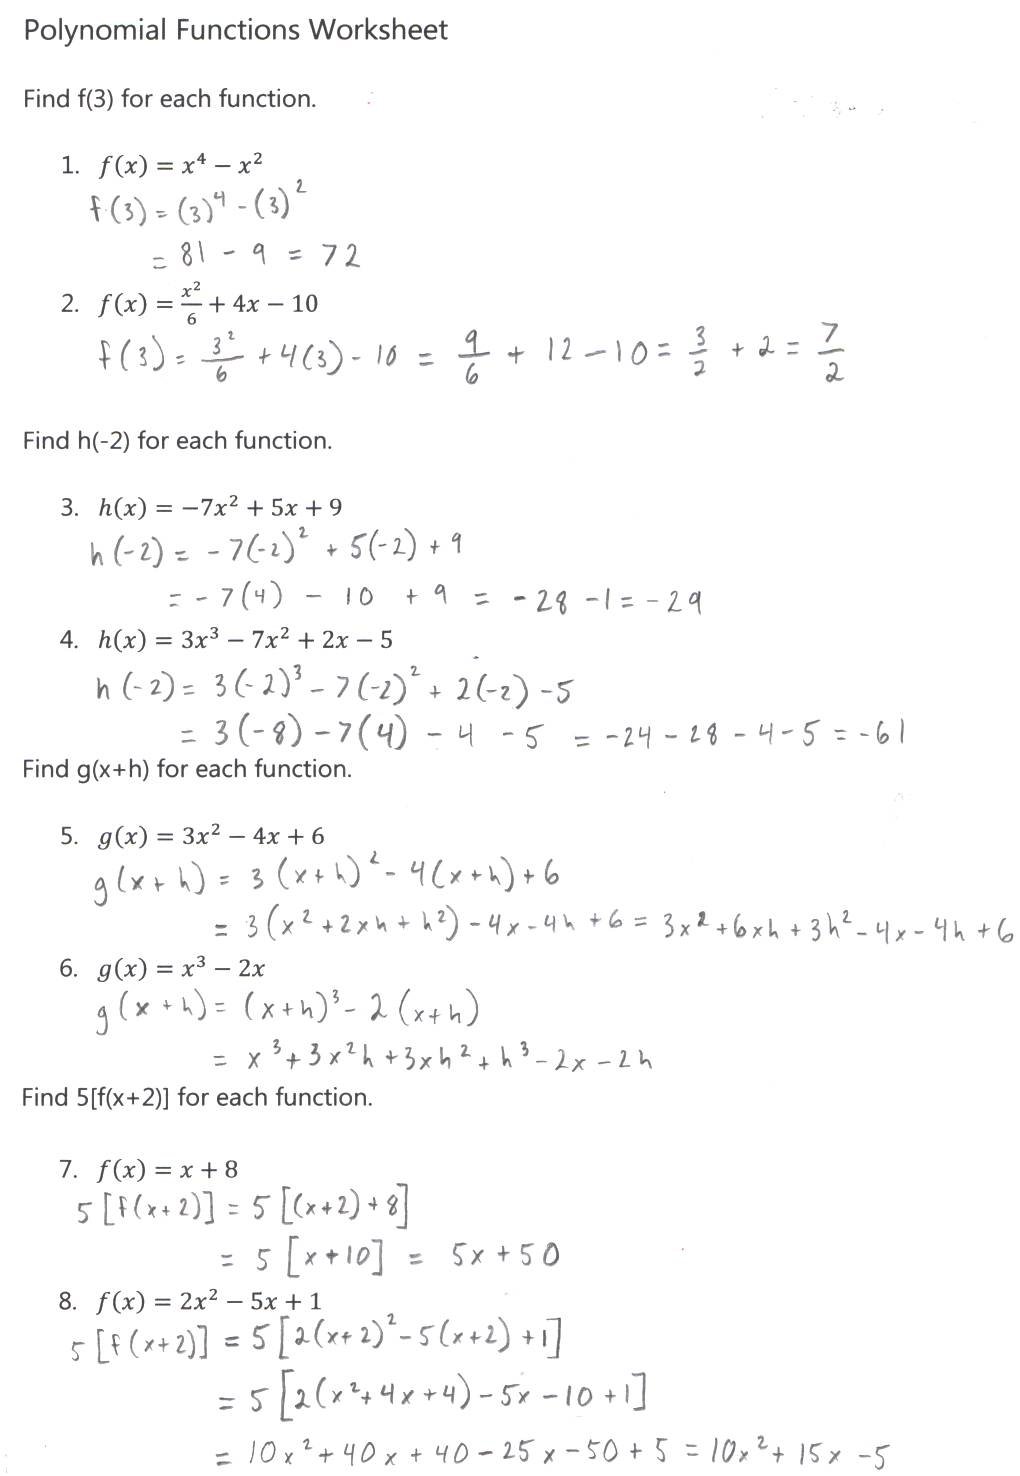 Evaluating Functions Worksheet Algebra 22 Answer Key - Tutordale.com Inside Evaluating Functions Worksheet Algebra 1